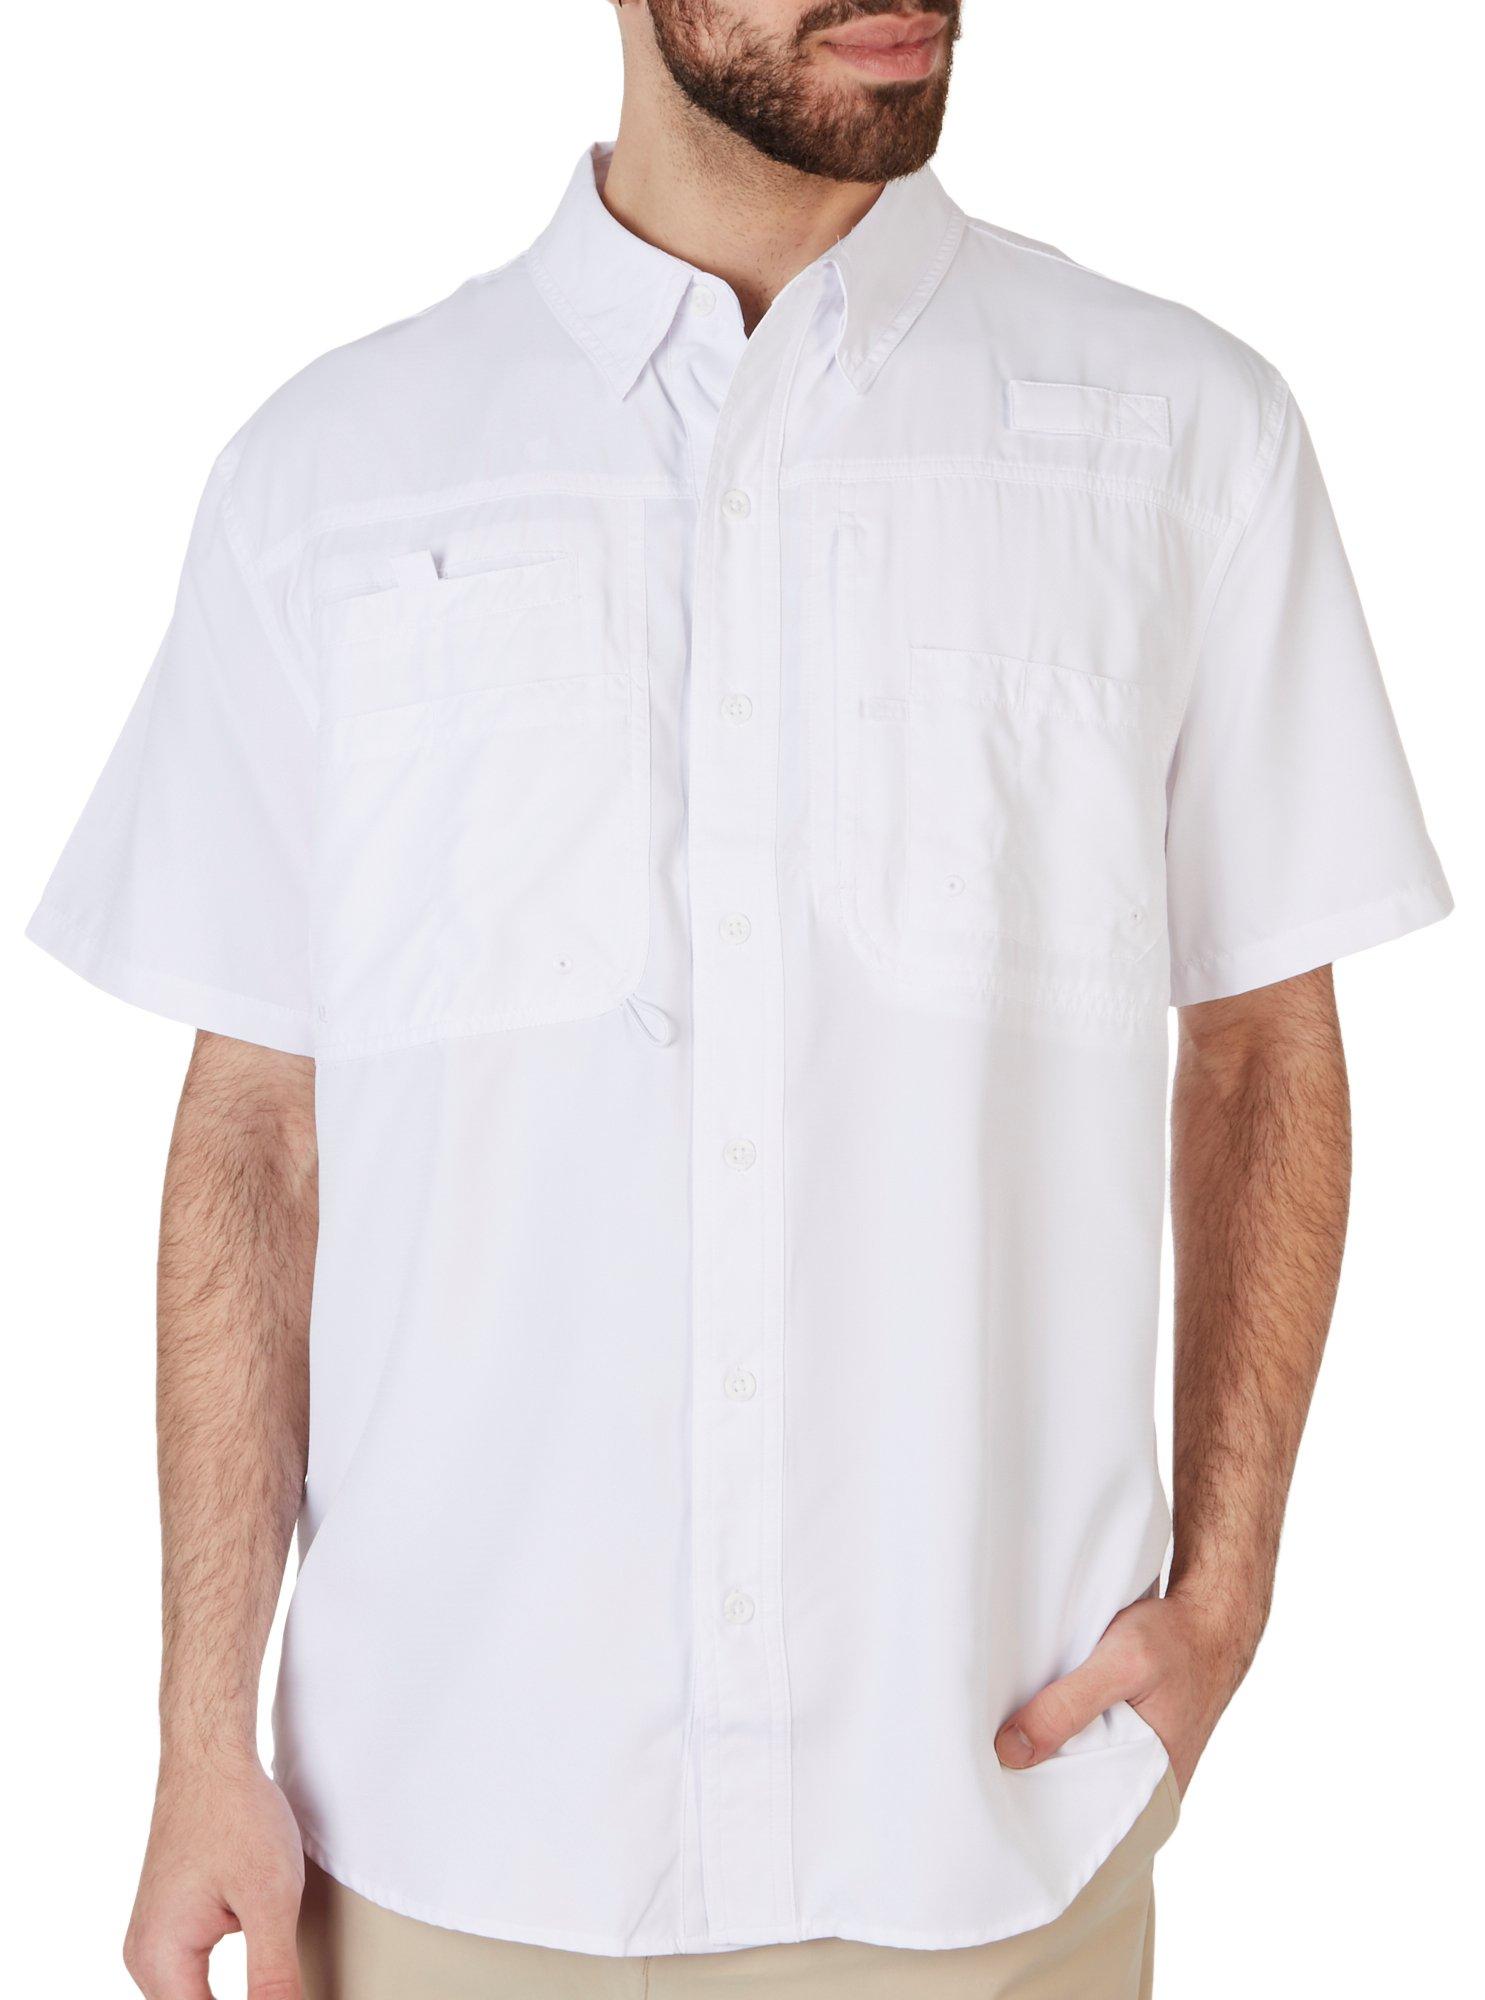 Reel Legends Men's Button-front Casual Shirt Size Med Multicolor Sailfish  LB02